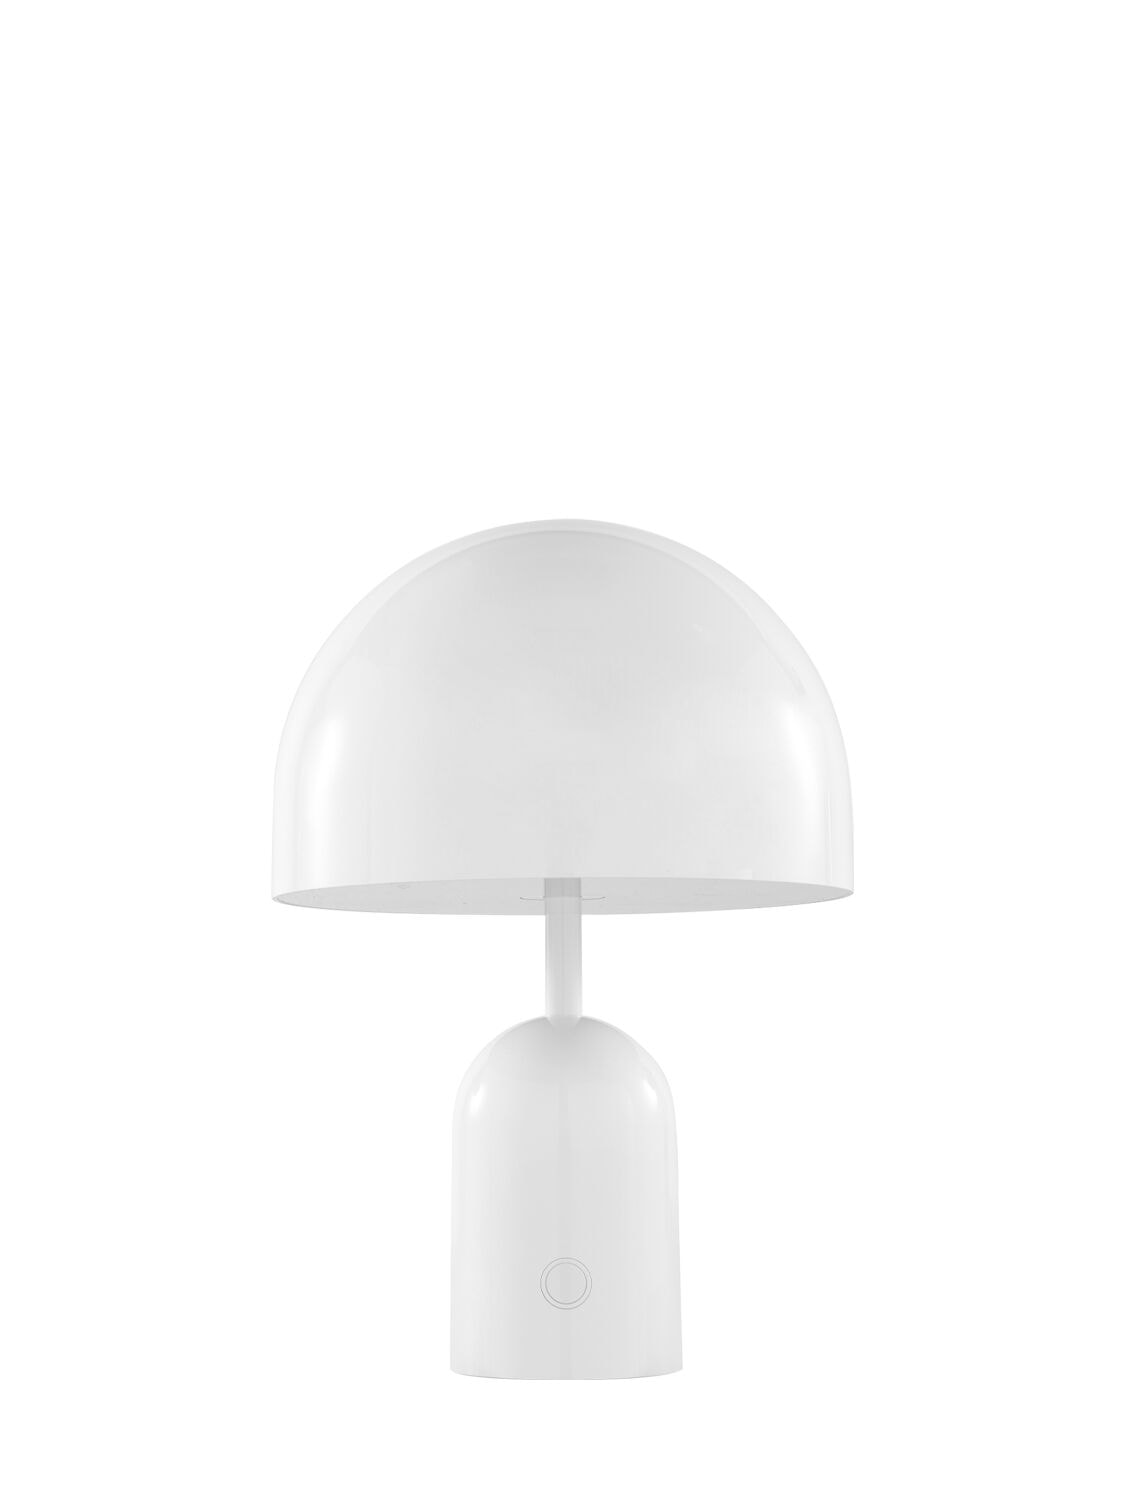 Tom Dixon Bell Portable Led Lamp In White